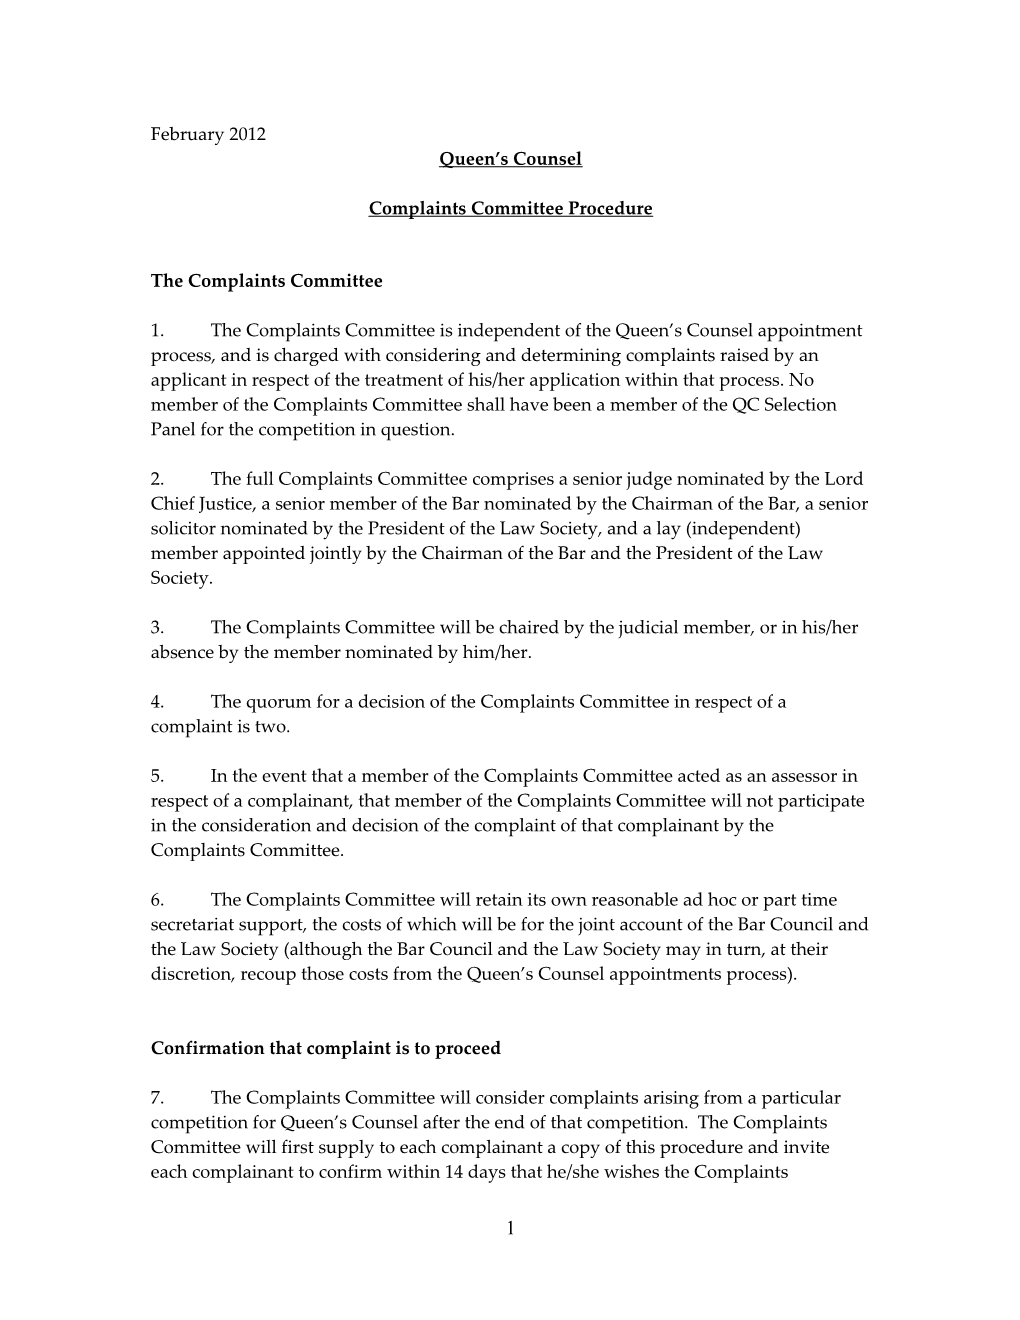 Complaints Committee Procedure